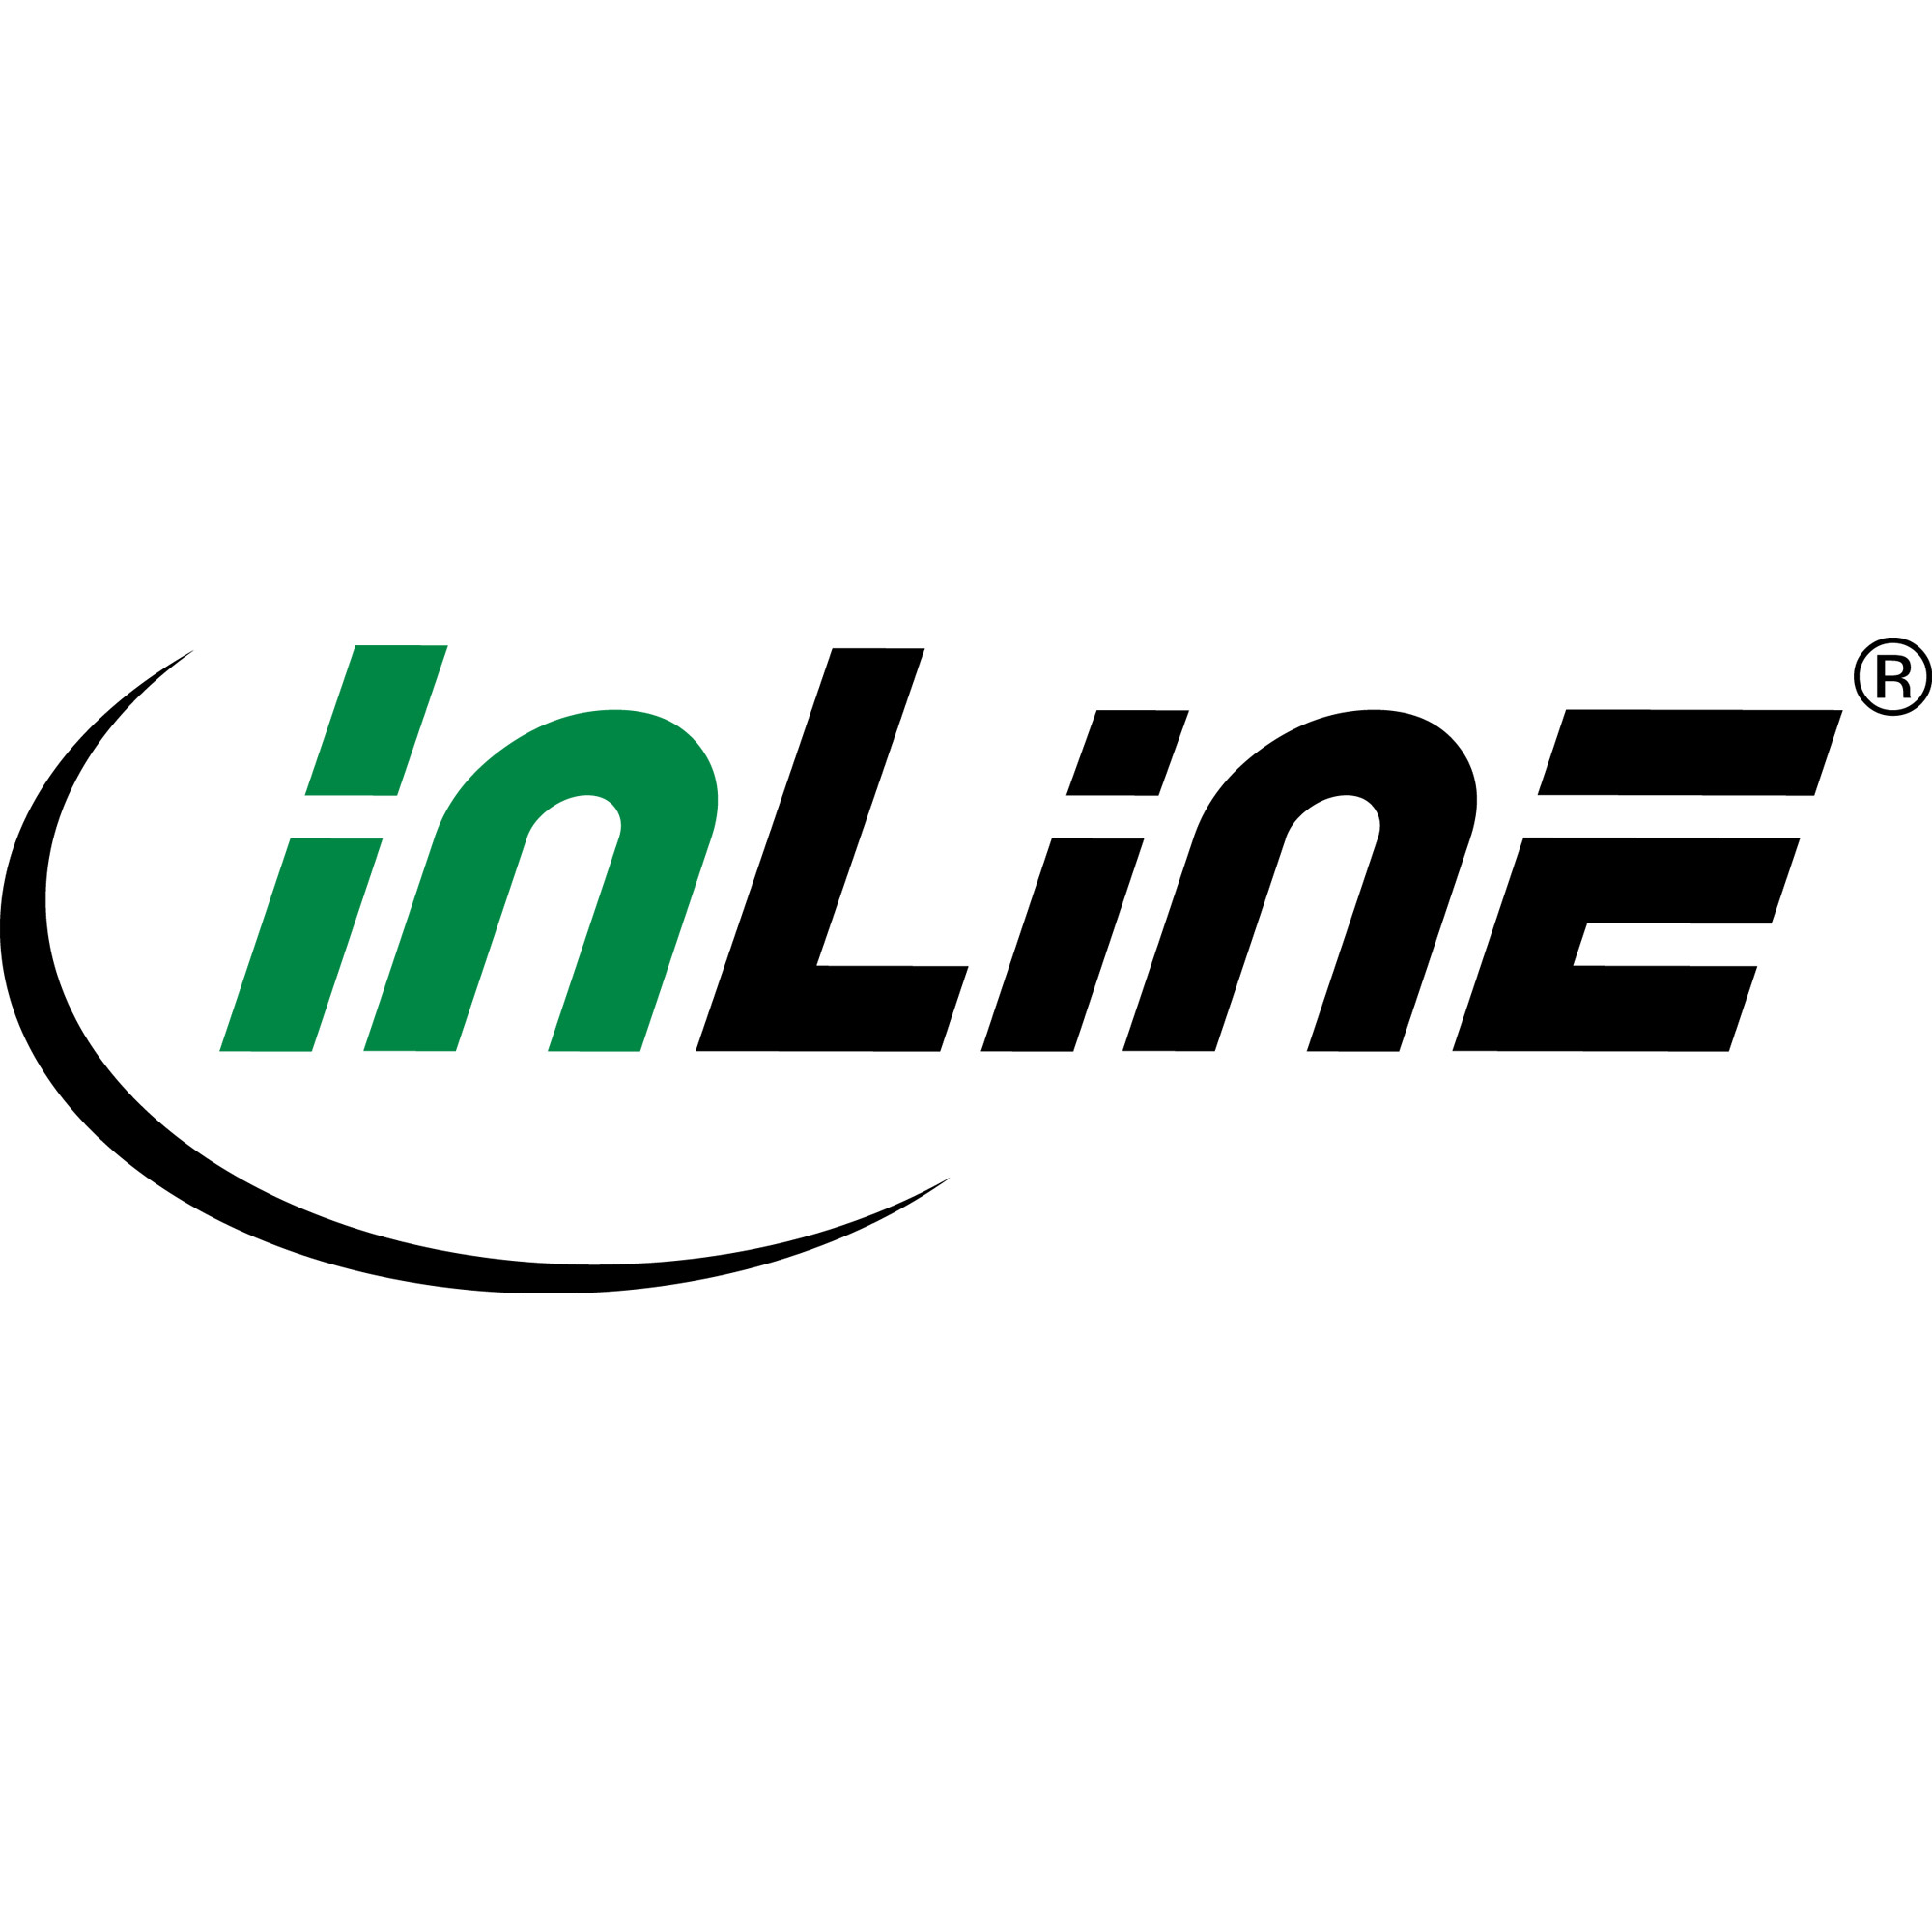 InLine - Patch-Kabel - 0,25m - Grün - geschirmt